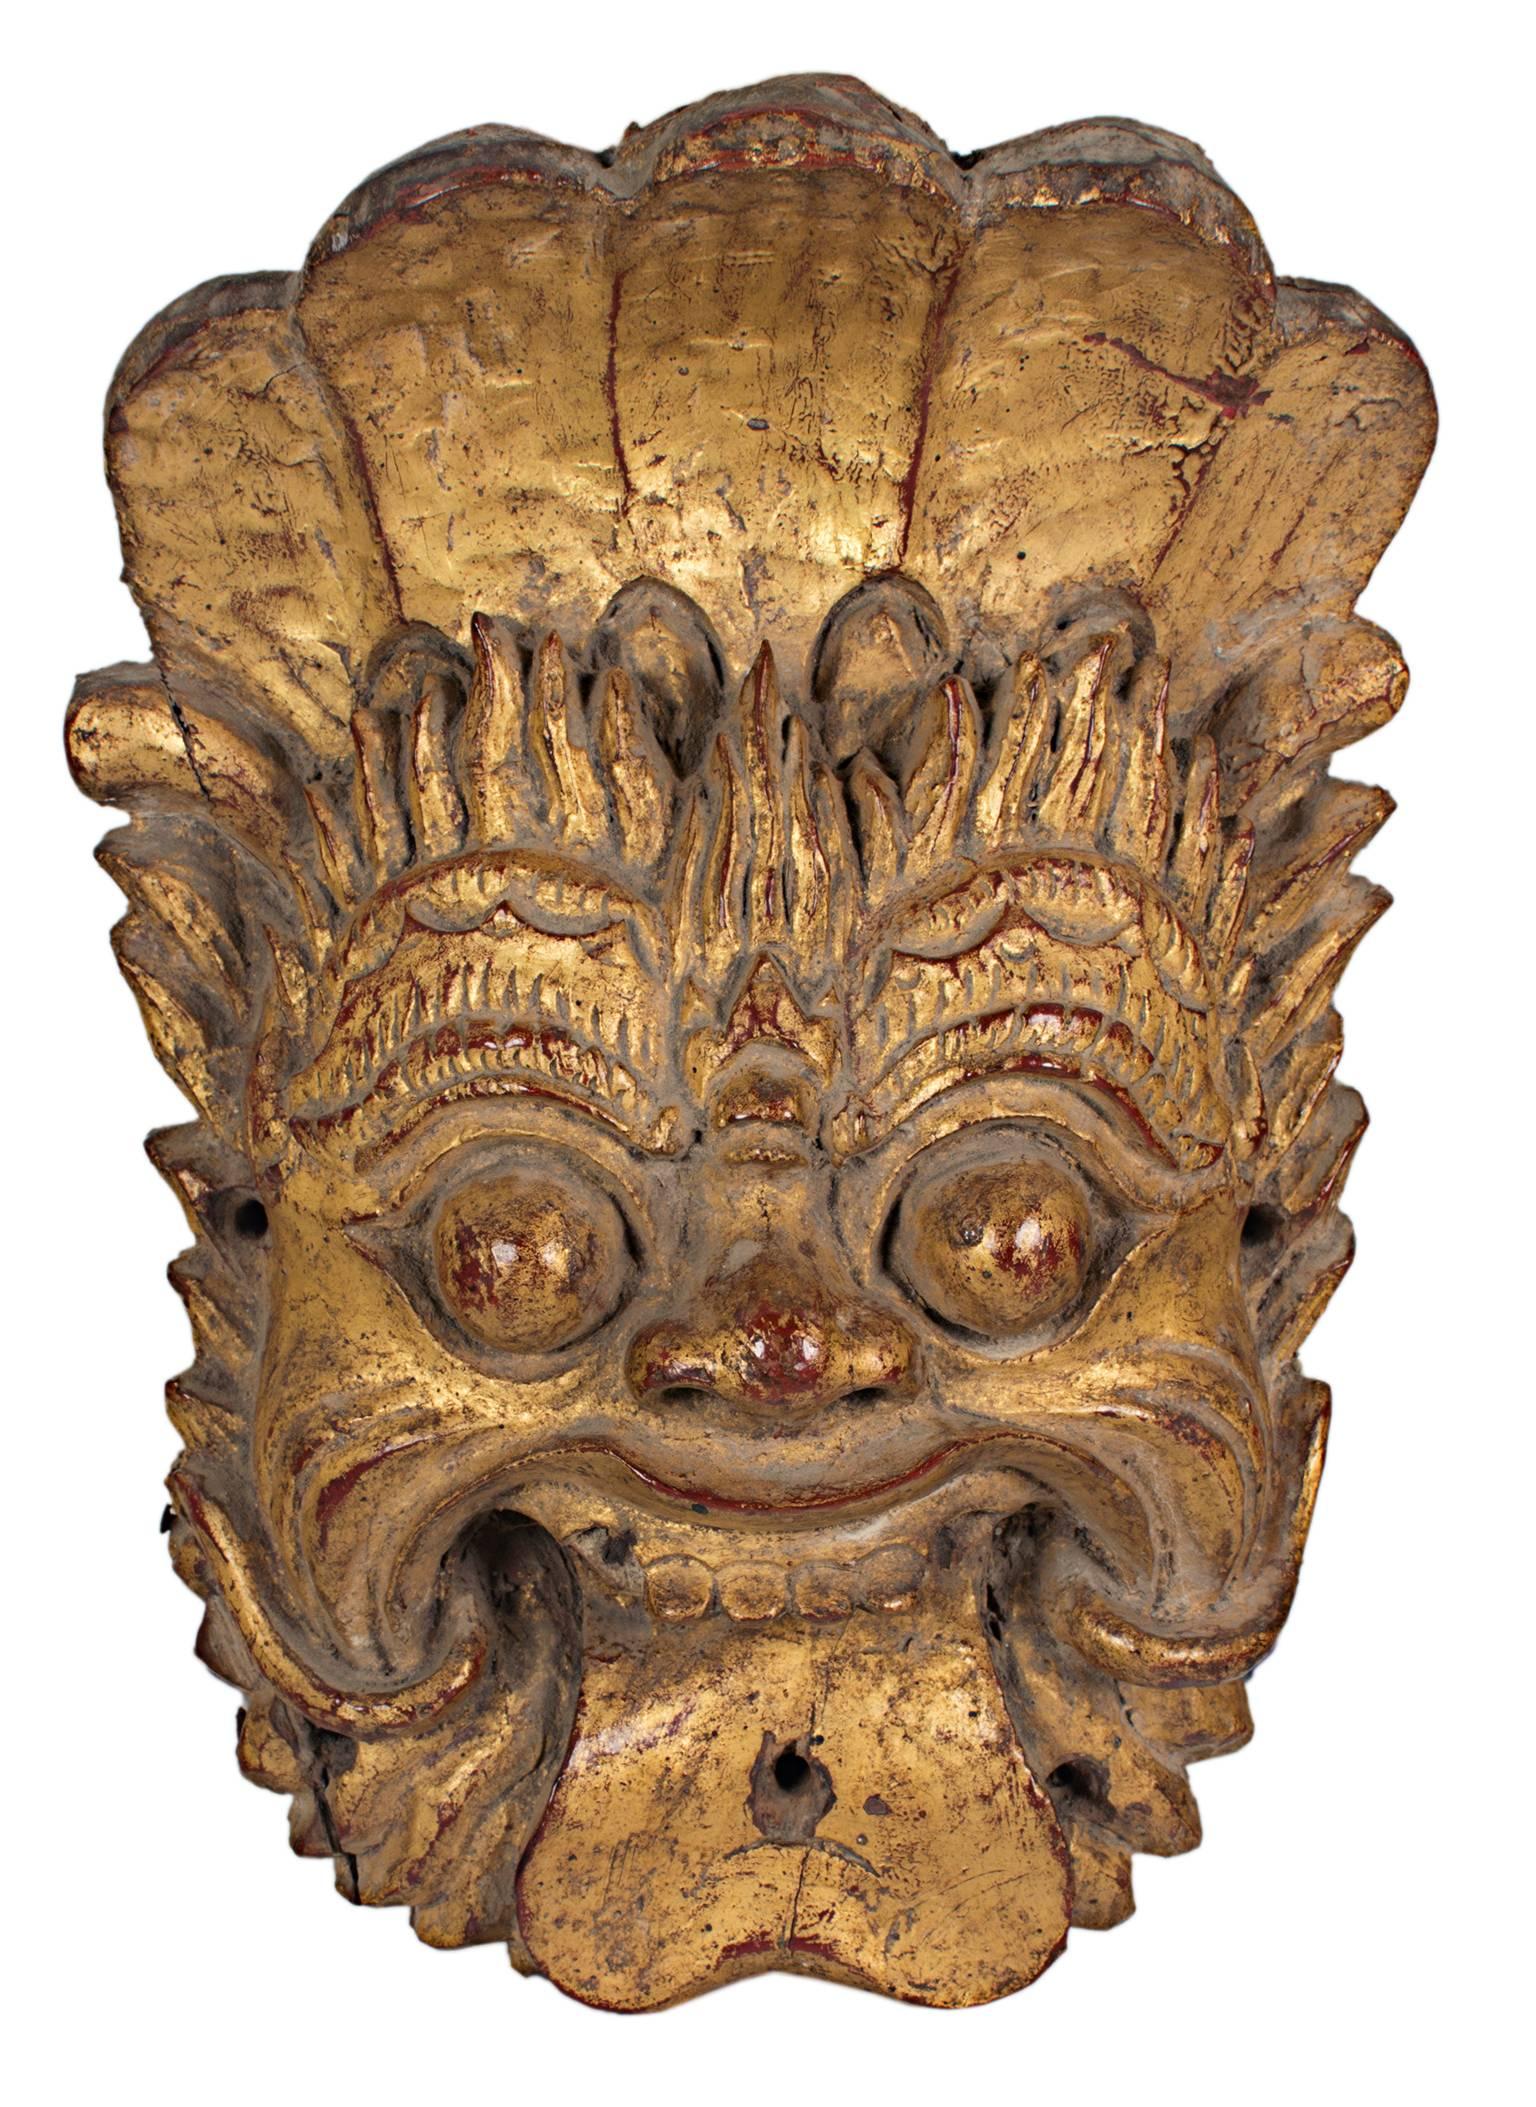 « Masque indonésien », bois avec feuille d'or d'un homme souriant - Sculpture de Unknown